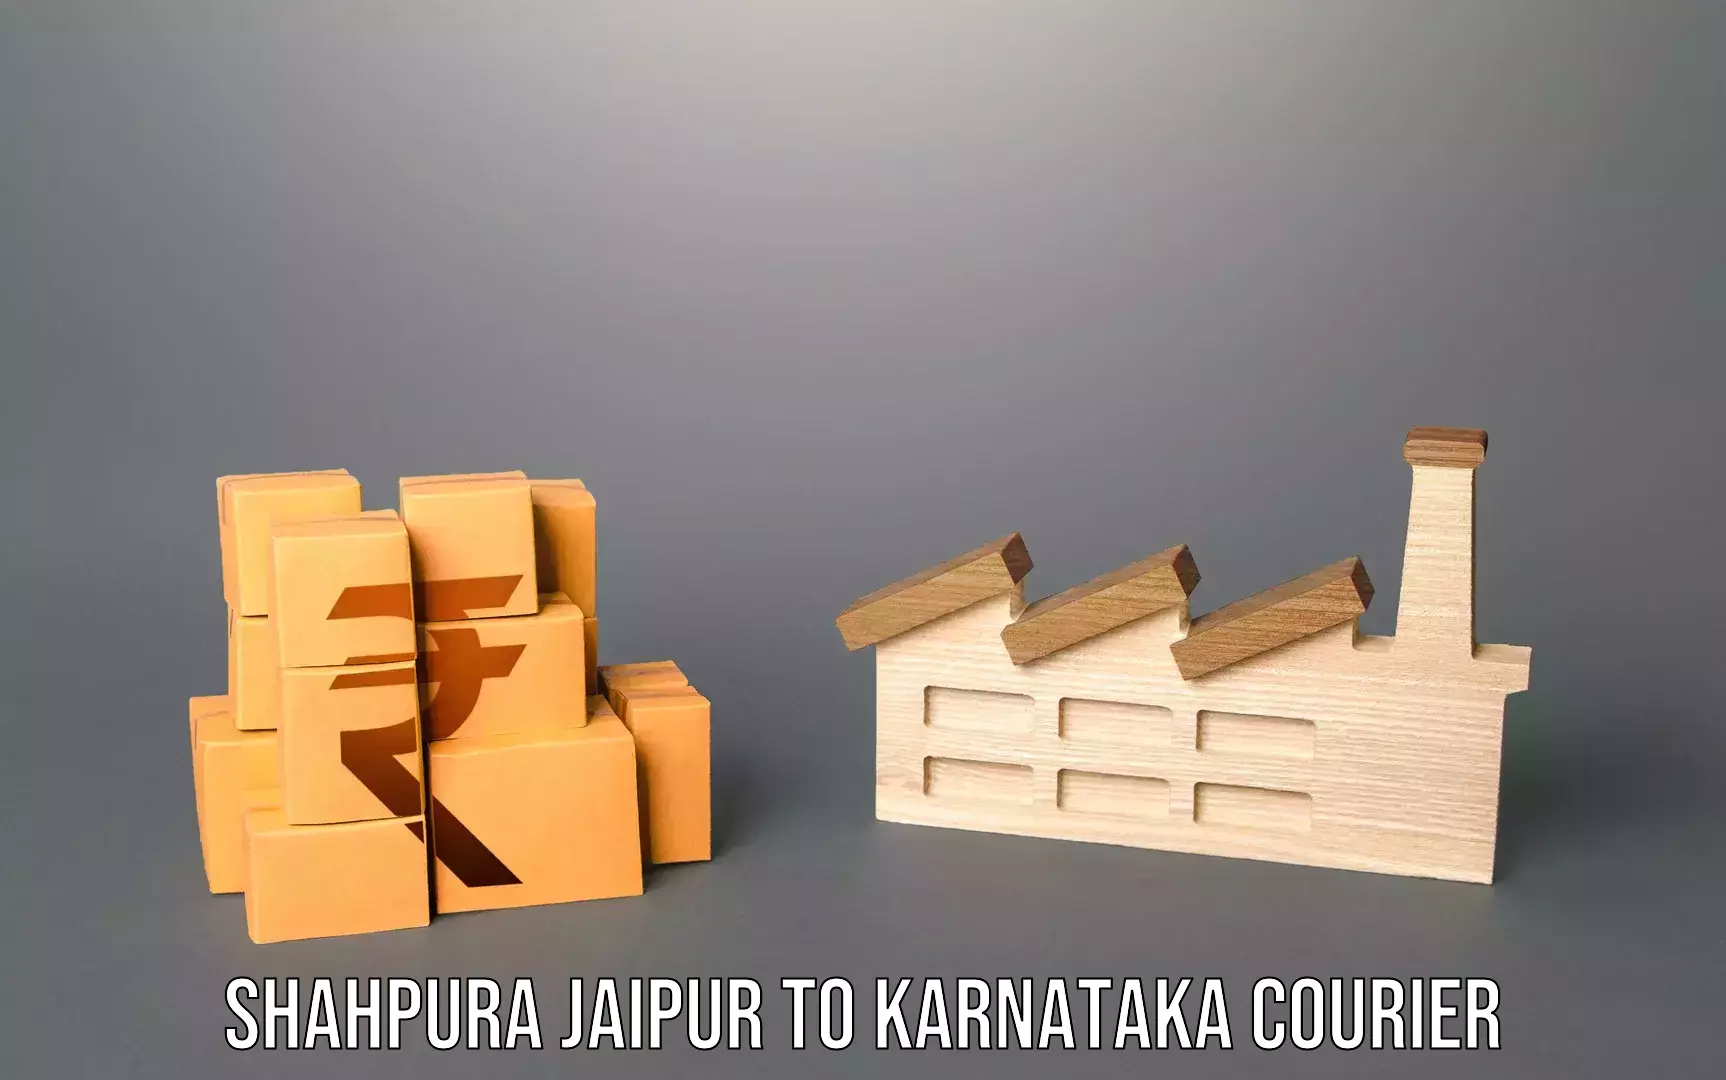 Baggage shipping experience Shahpura Jaipur to Karnataka